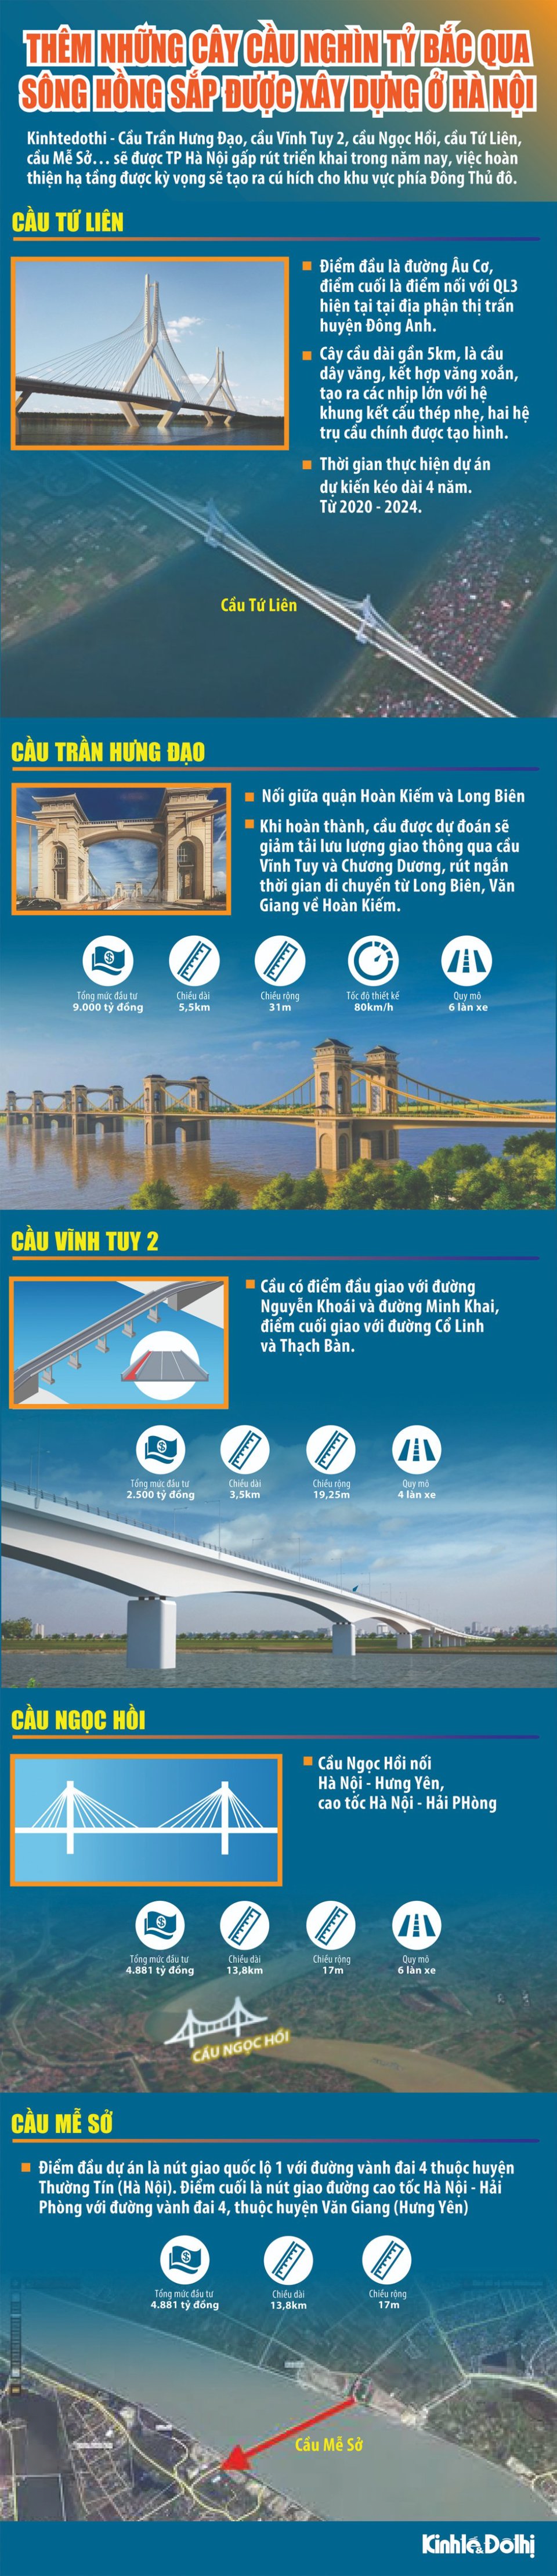 [Infographic] Những cây cầu nghìn tỷ bắc qua sông Hồng sắp được xây dựng ở Hà Nội - Ảnh 1